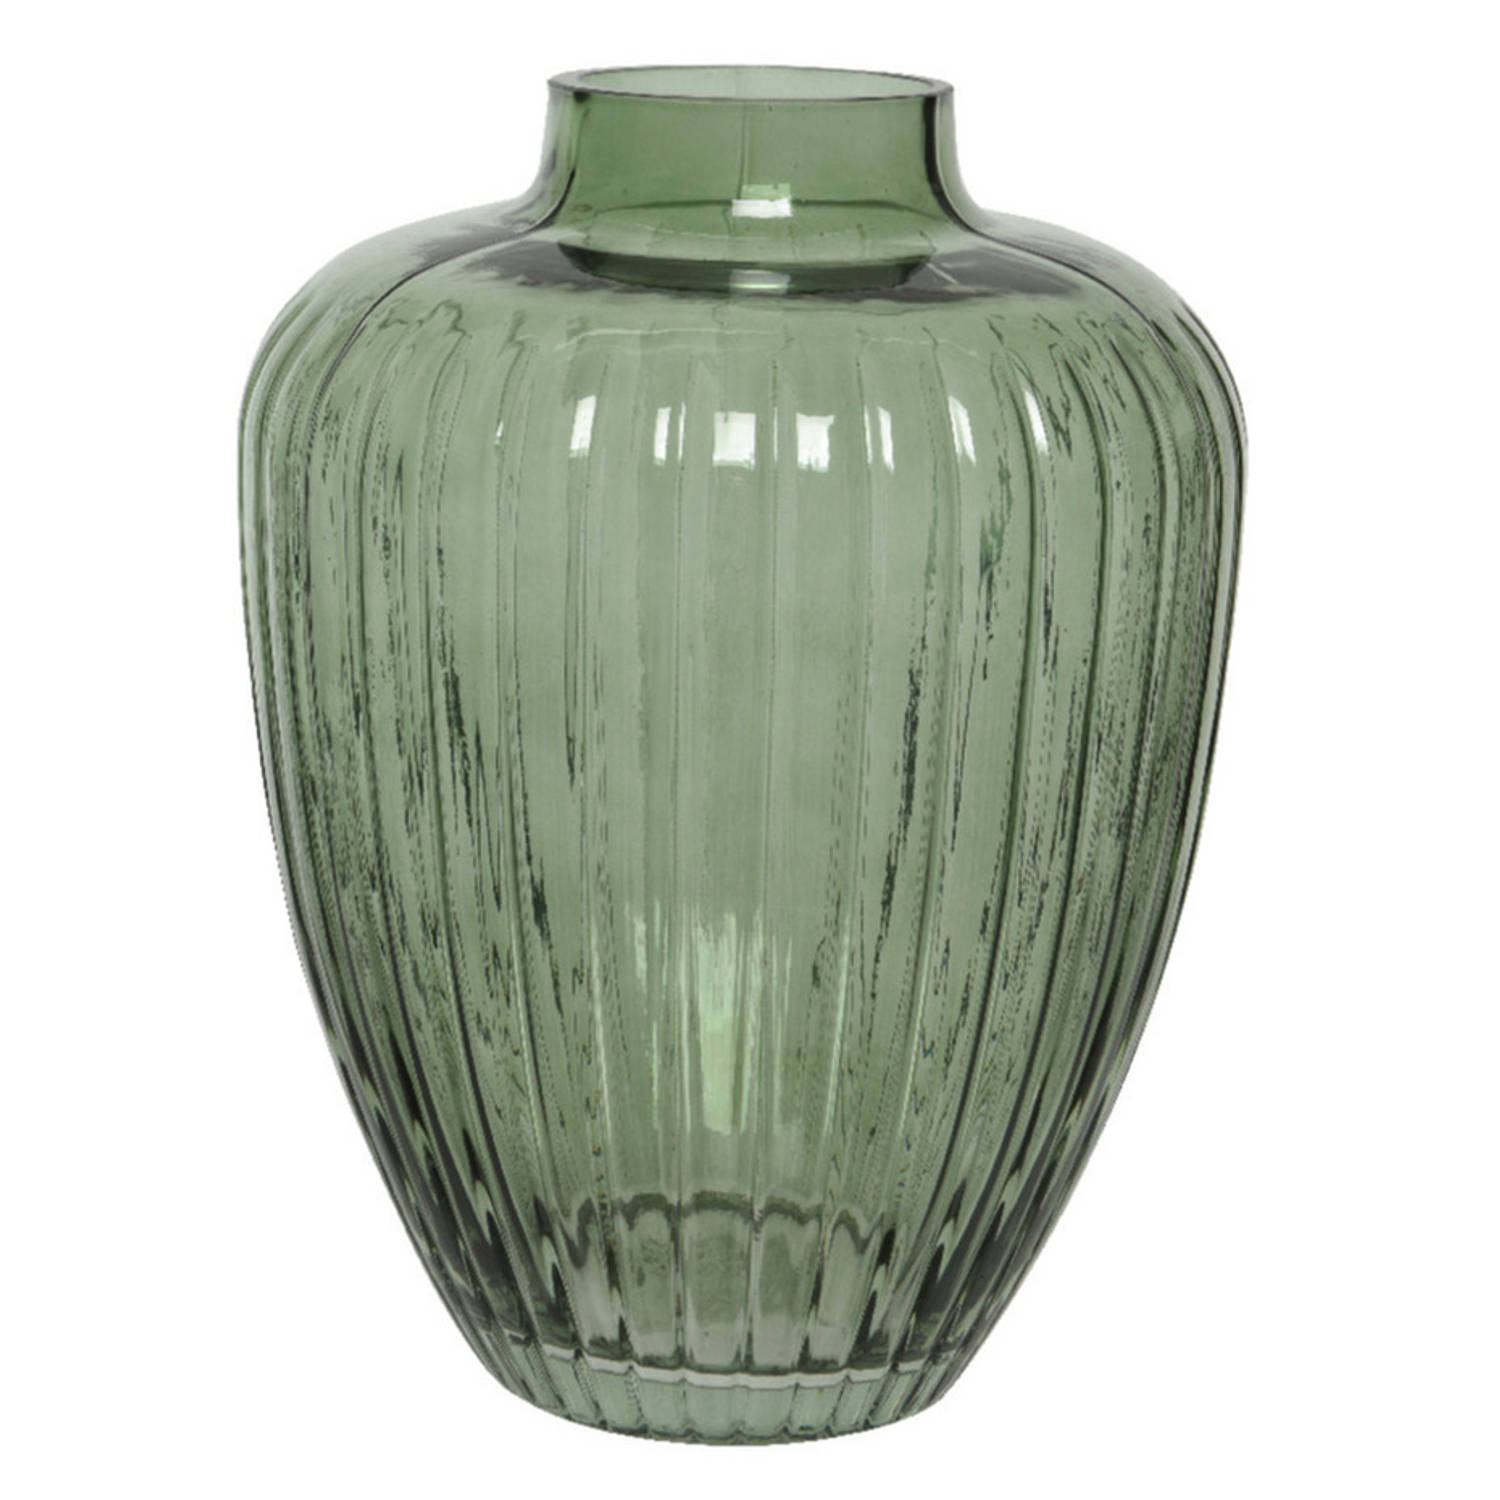 leraar Rondlopen prototype Bloemen vaas groen transparant van glas 25 cm hoog diameter 19 cm - Vazen |  Blokker